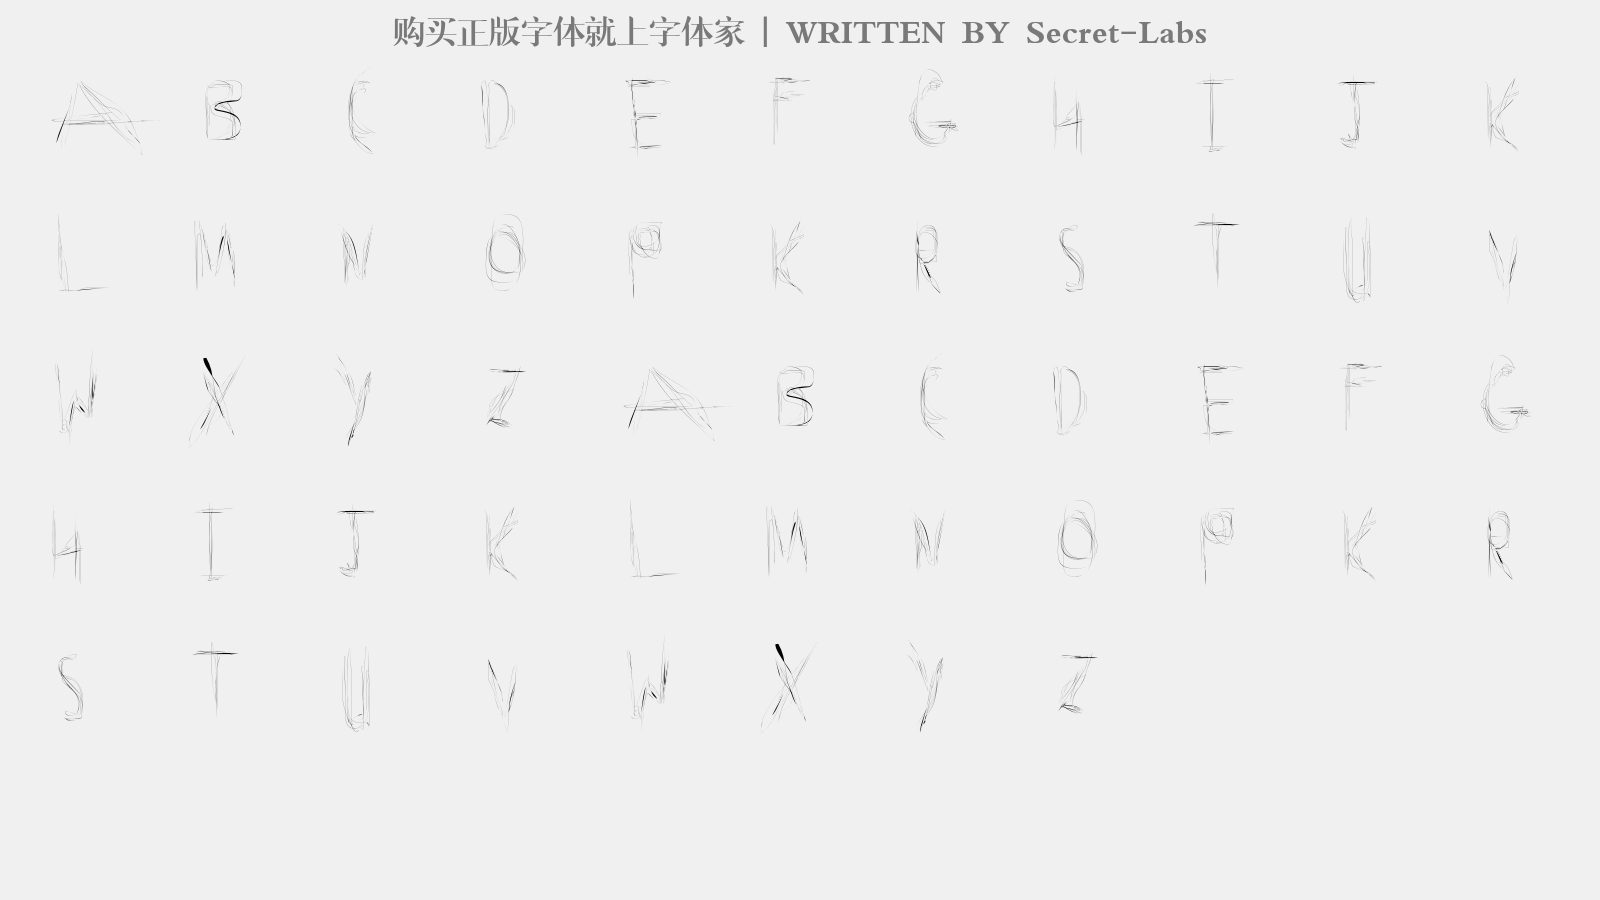 Secret-Labs - 大写字母/小写字母/数字